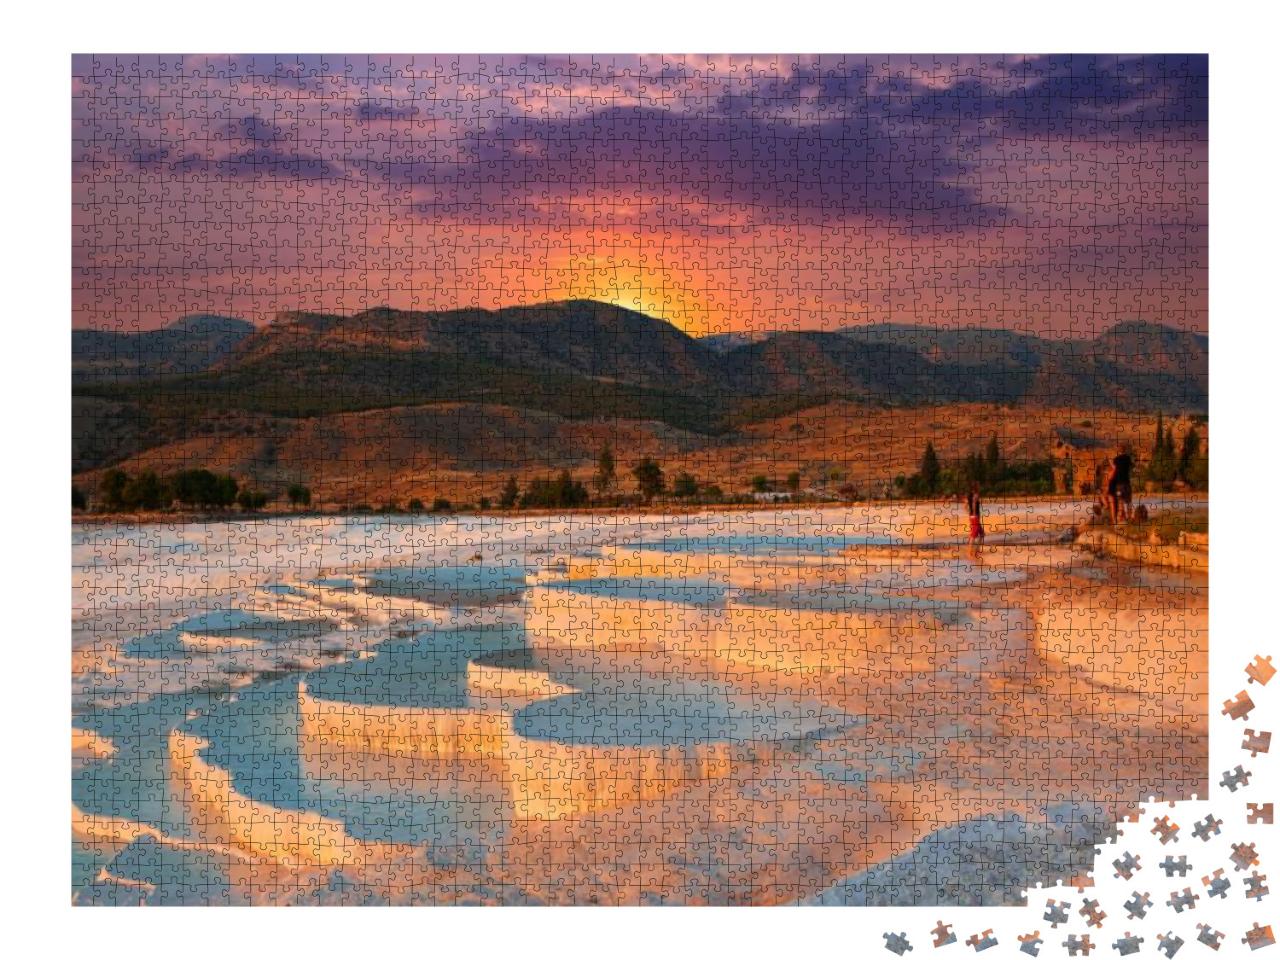 Puzzle 2000 Teile „Wunderschöner Sonnenaufgang und natürliche Travertin-Pools und Terrassen in Pamukkale“